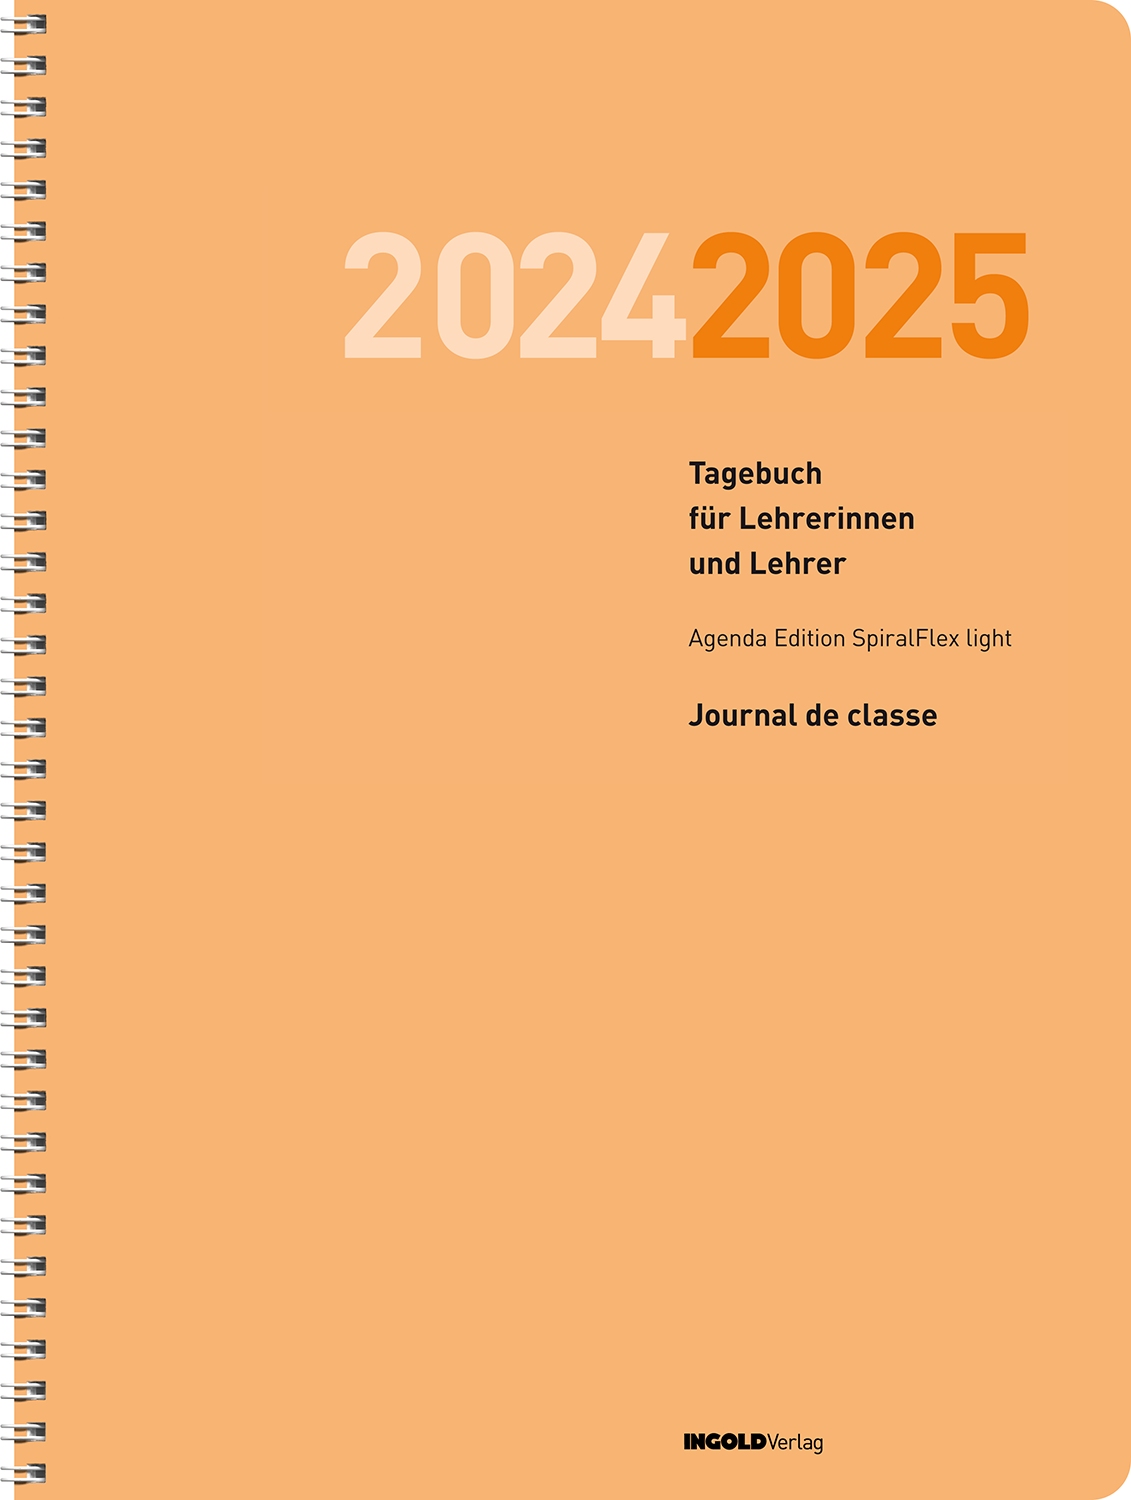 Lehrerinnen- und Lehrertagebuch 2024/25 Spiralbind. LIGHT / SPEZ.BESTELLUNG!!!